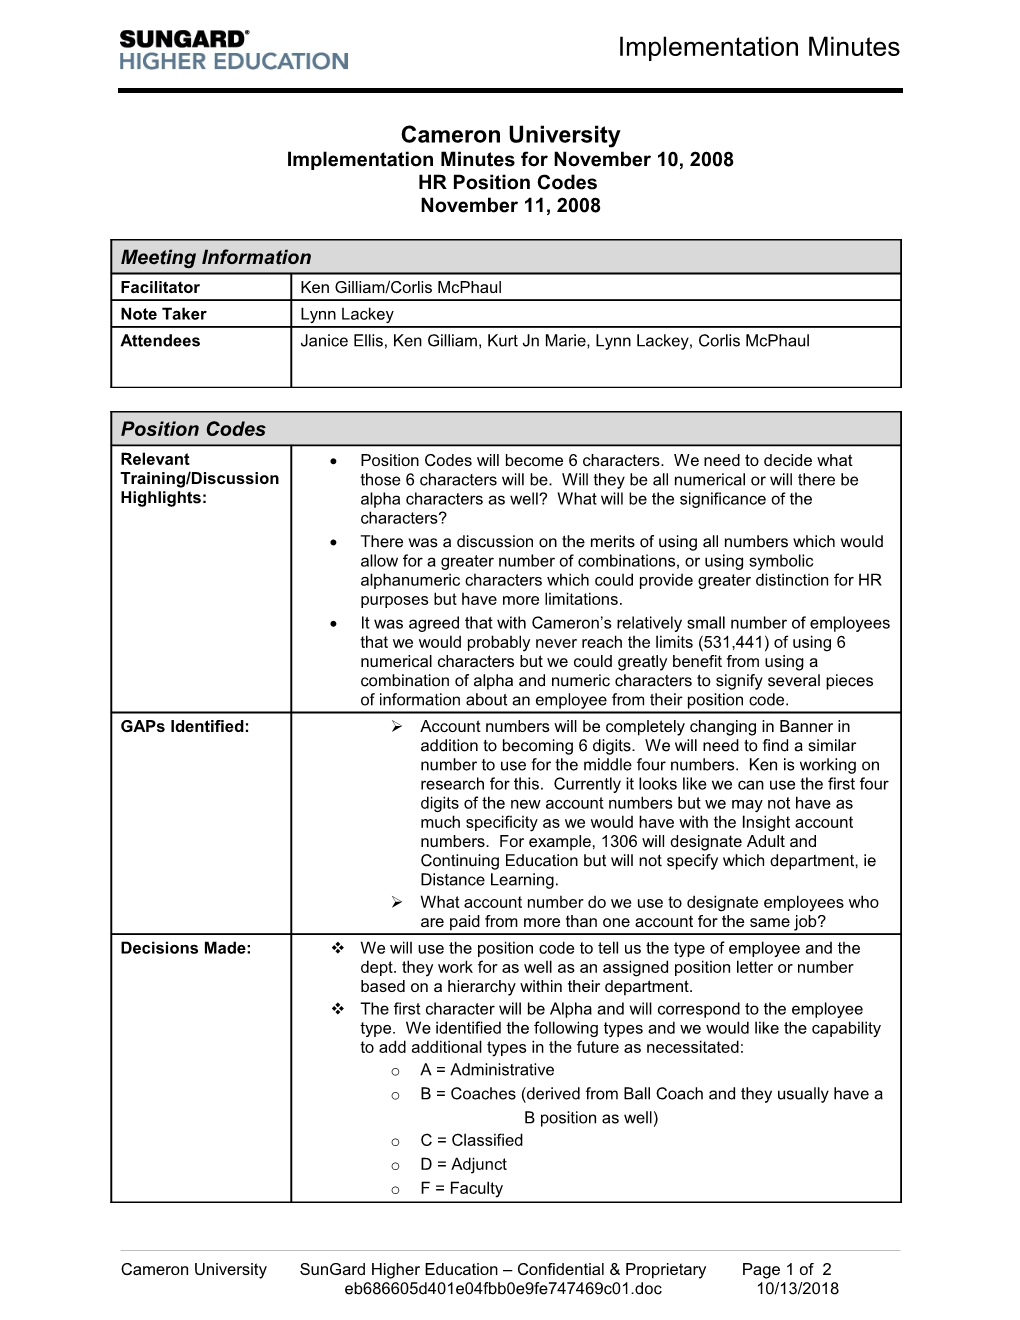 Implementation Minutes for November 10, 2008